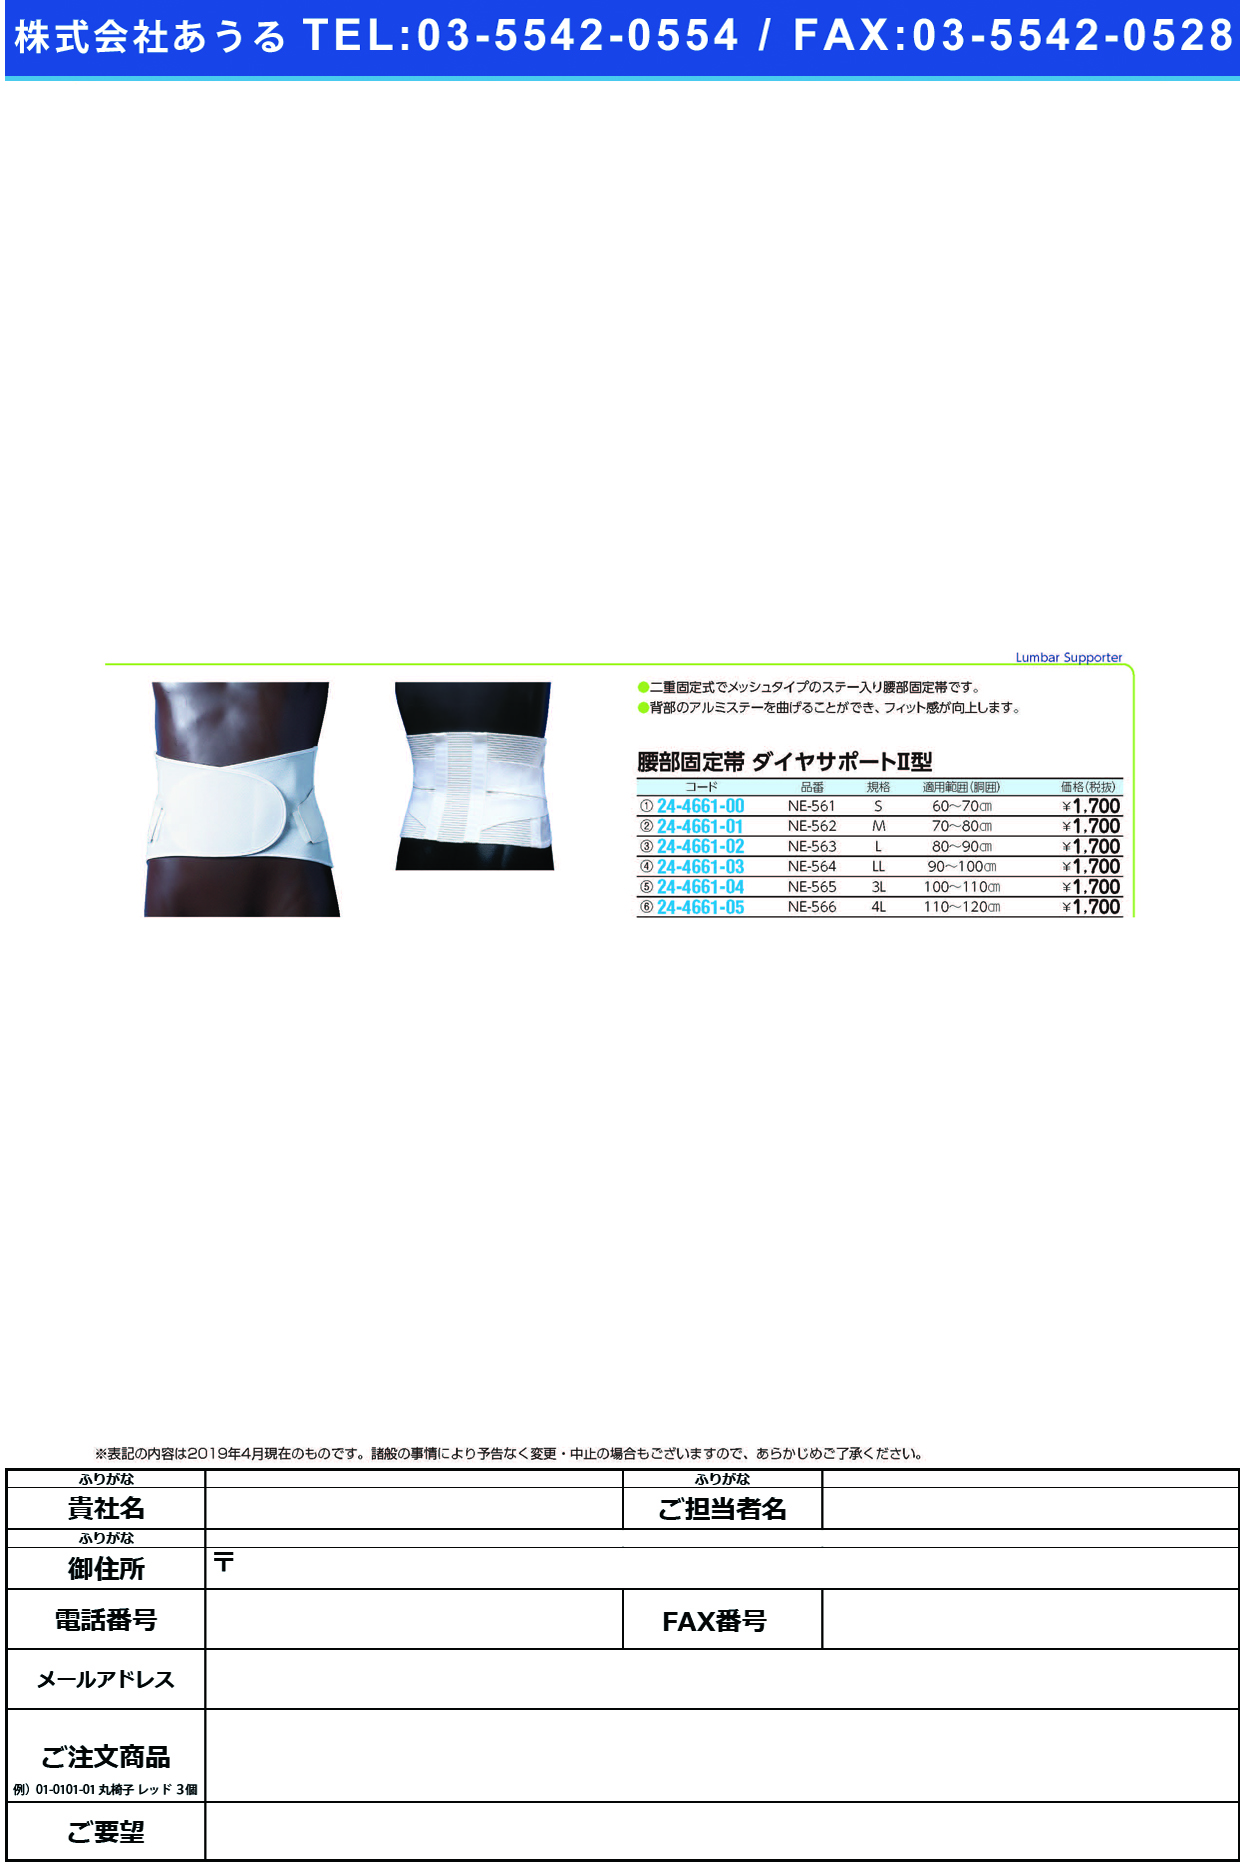 (24-4661-00)ダイヤサポート?型（Ｓ） NE-561(60-70CM) ﾀﾞｲﾔｻﾎﾟｰﾄ2ｶﾞﾀS(日本衛材)【1箱単位】【2019年カタログ商品】